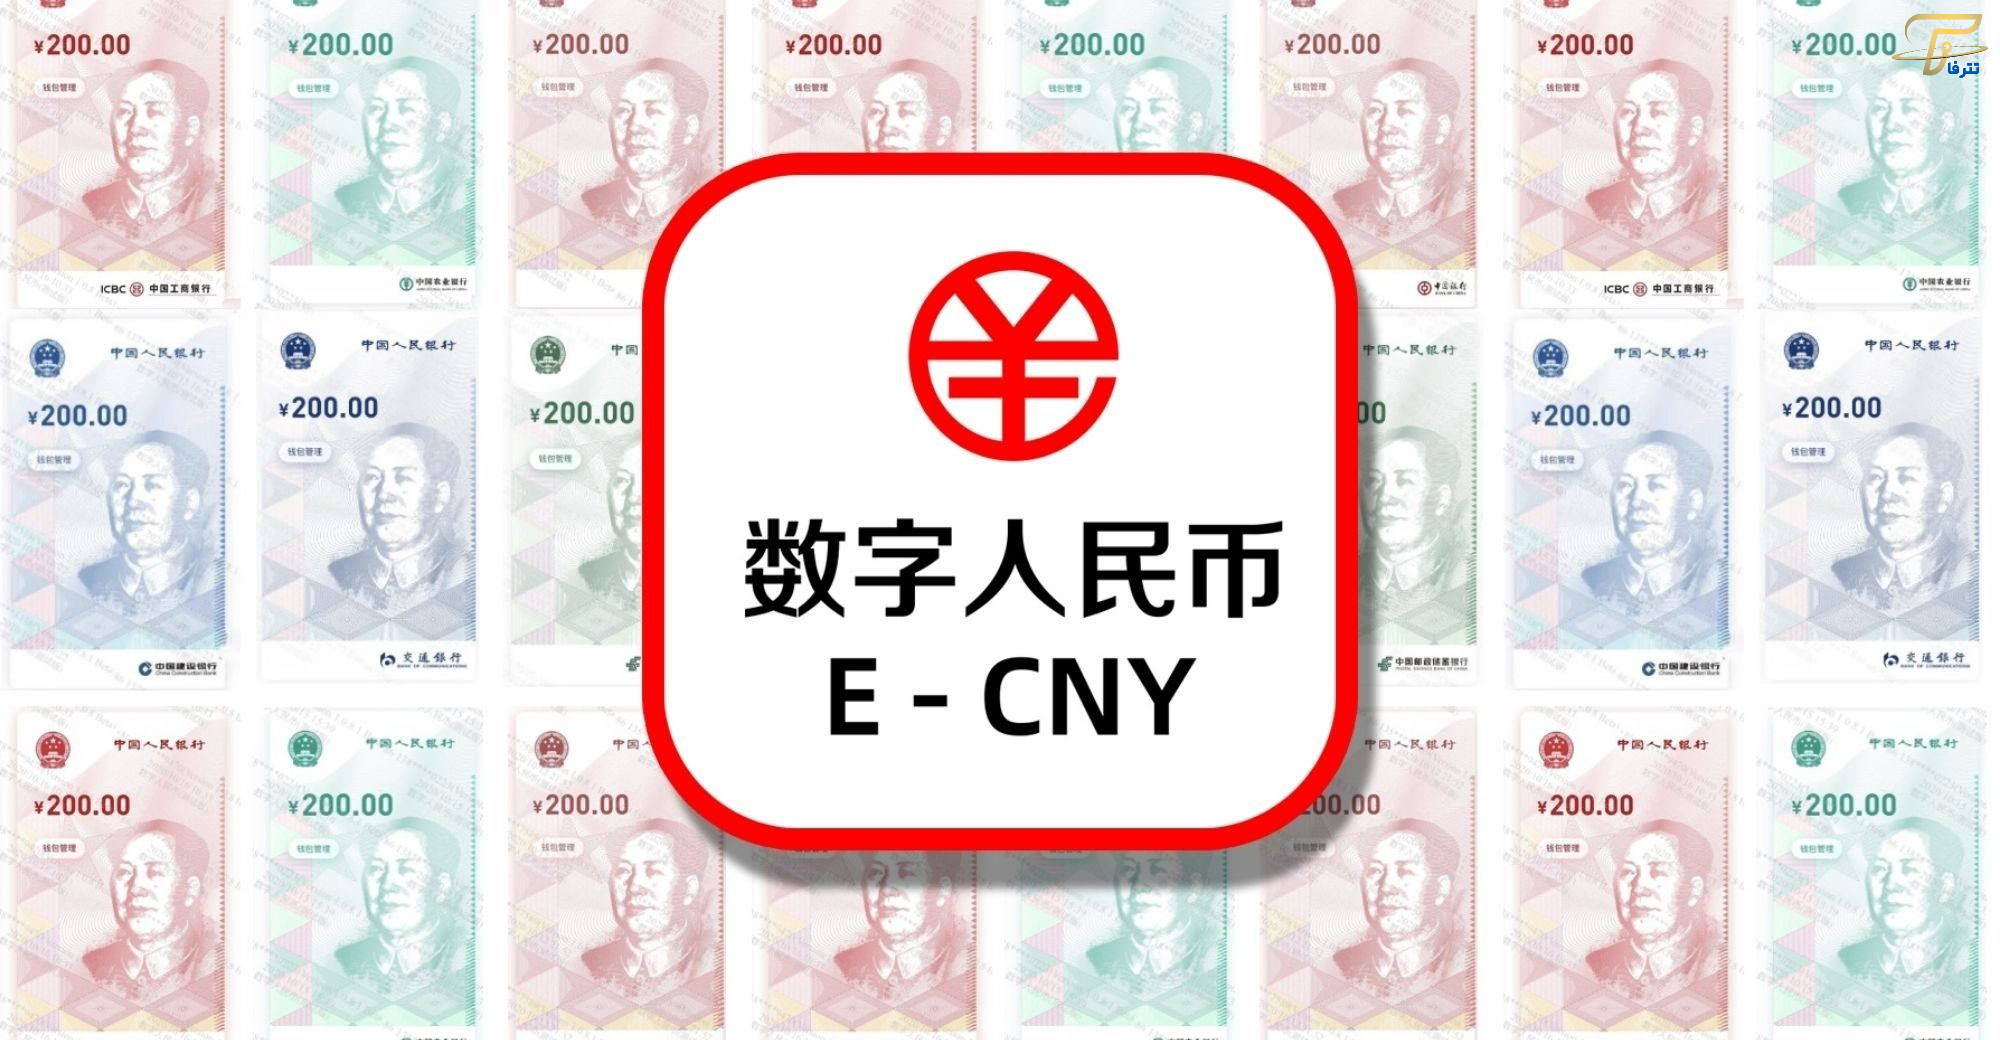 پرداخت از طریق یوان دیجیتال برای اولین بار در چین